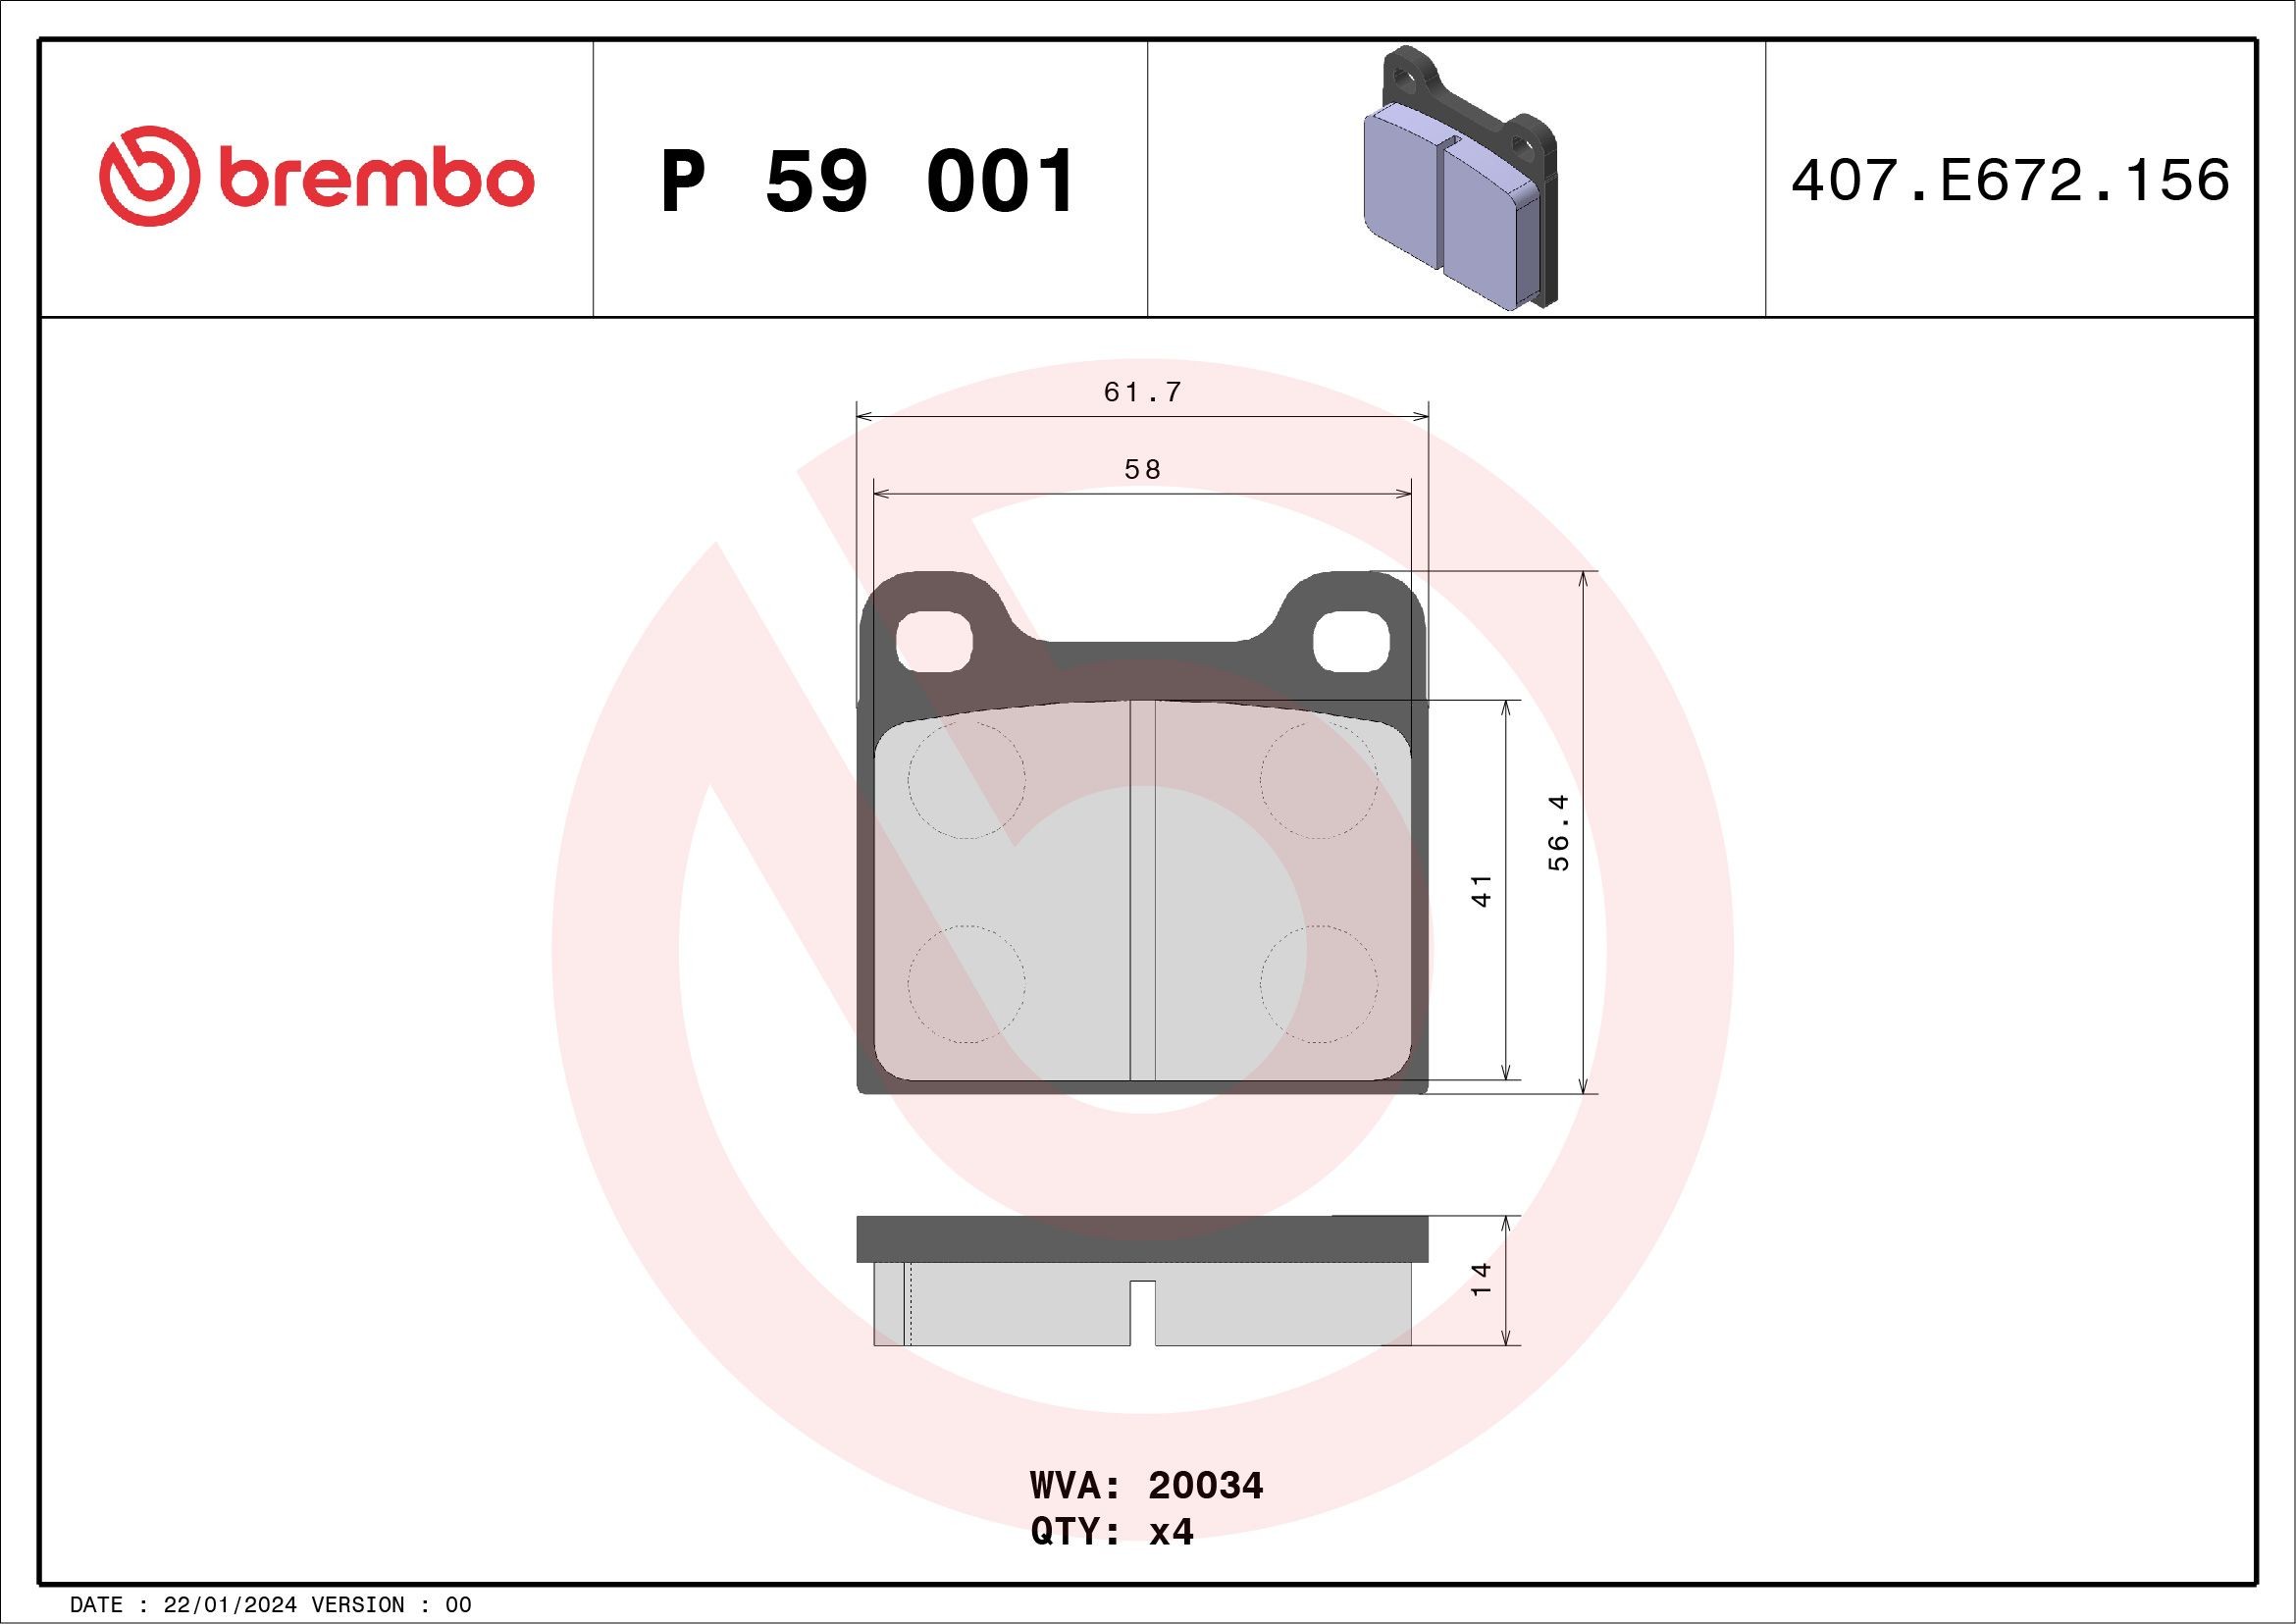 BREMBO P 59 001 Remblokken Niet geschikt voor slijtage waarschuwingscontact